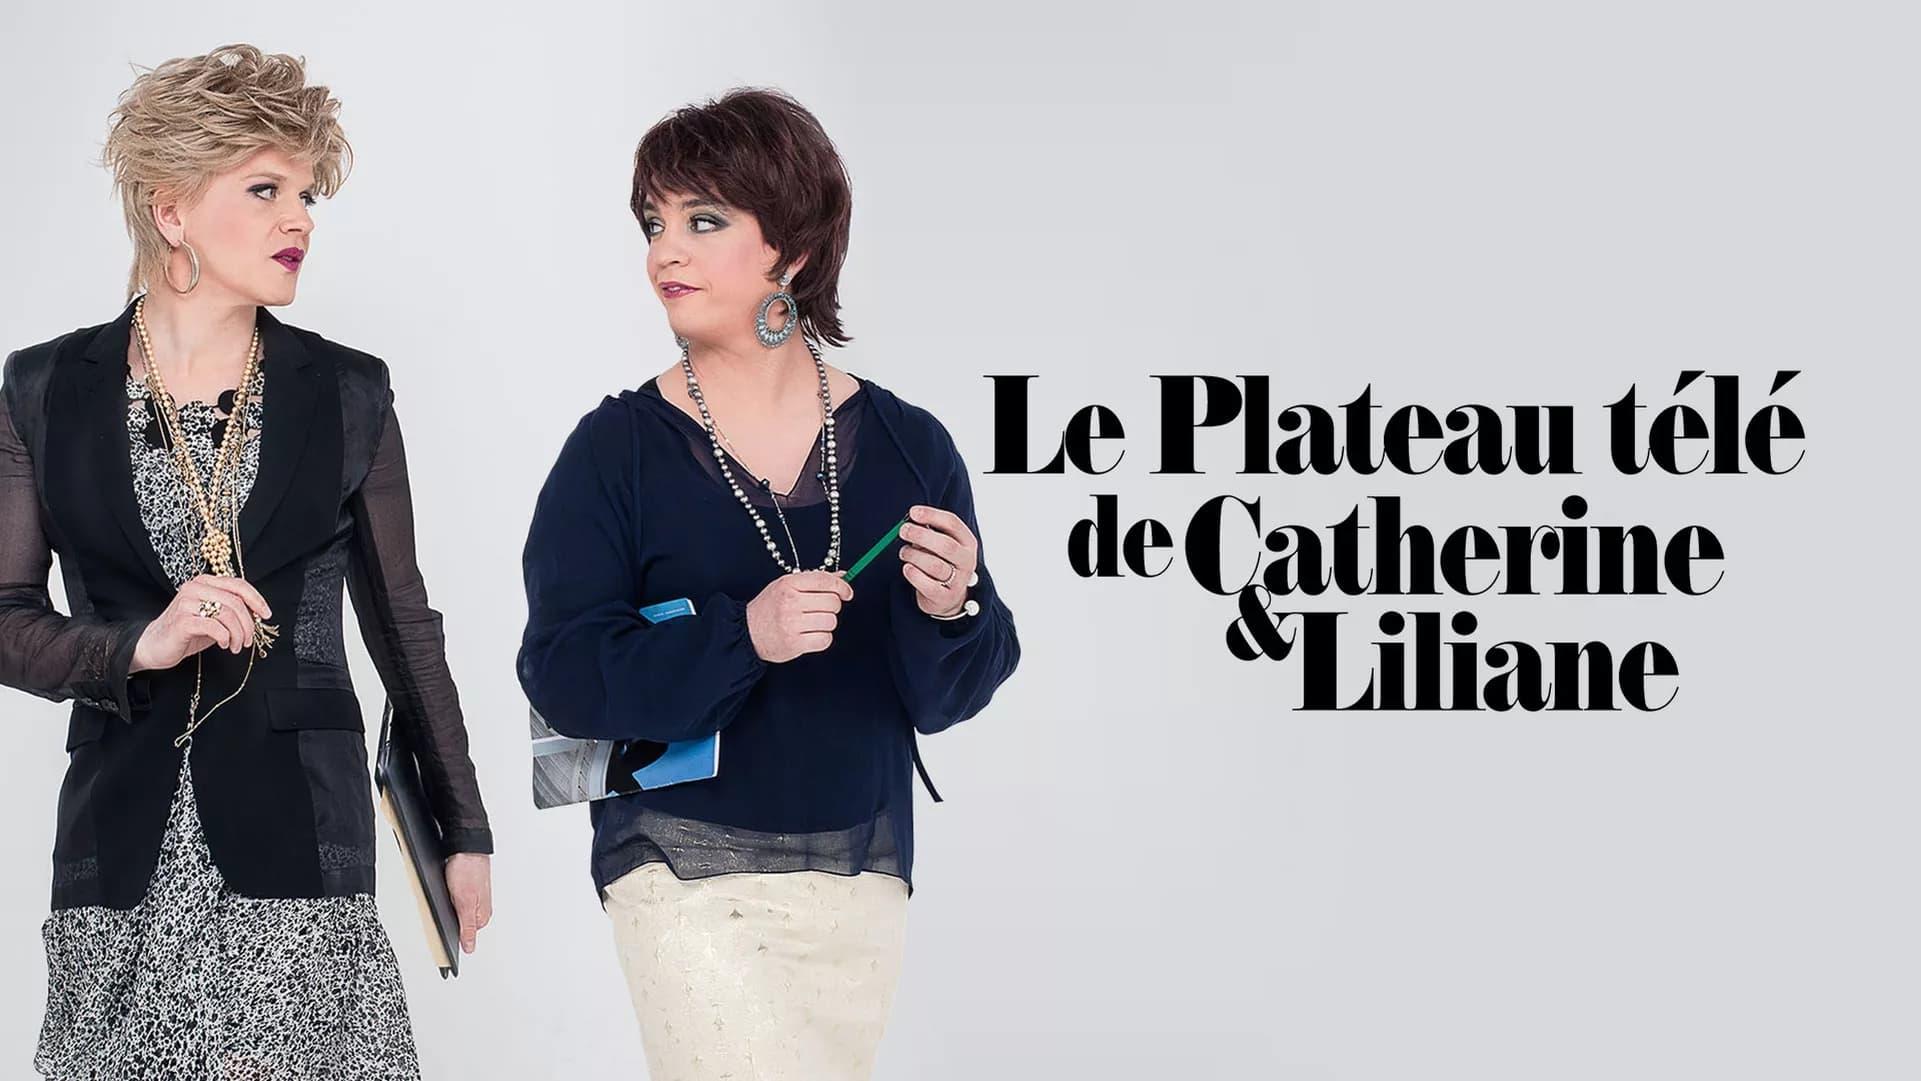 Le plateau télé de Catherine et Liliane backdrop